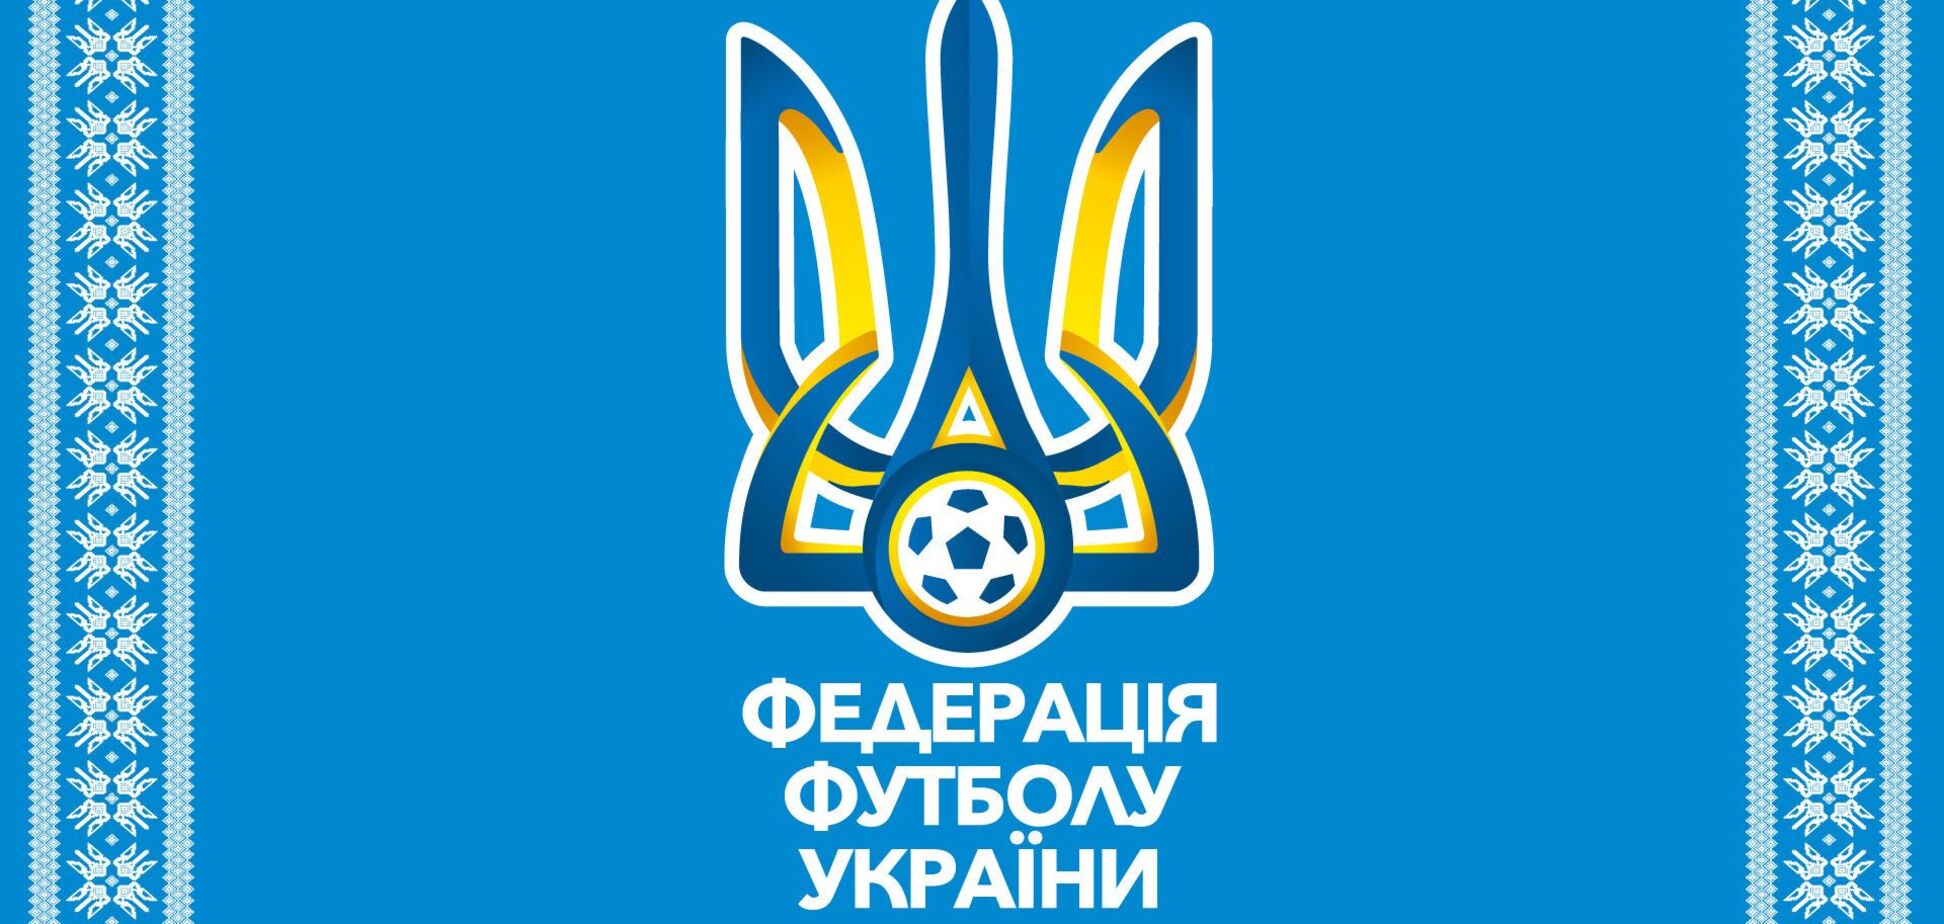 Юрій Голик на посаді віцепрезидента УАФ займеться 'Великим будівництвом' футбольної інфраструктури